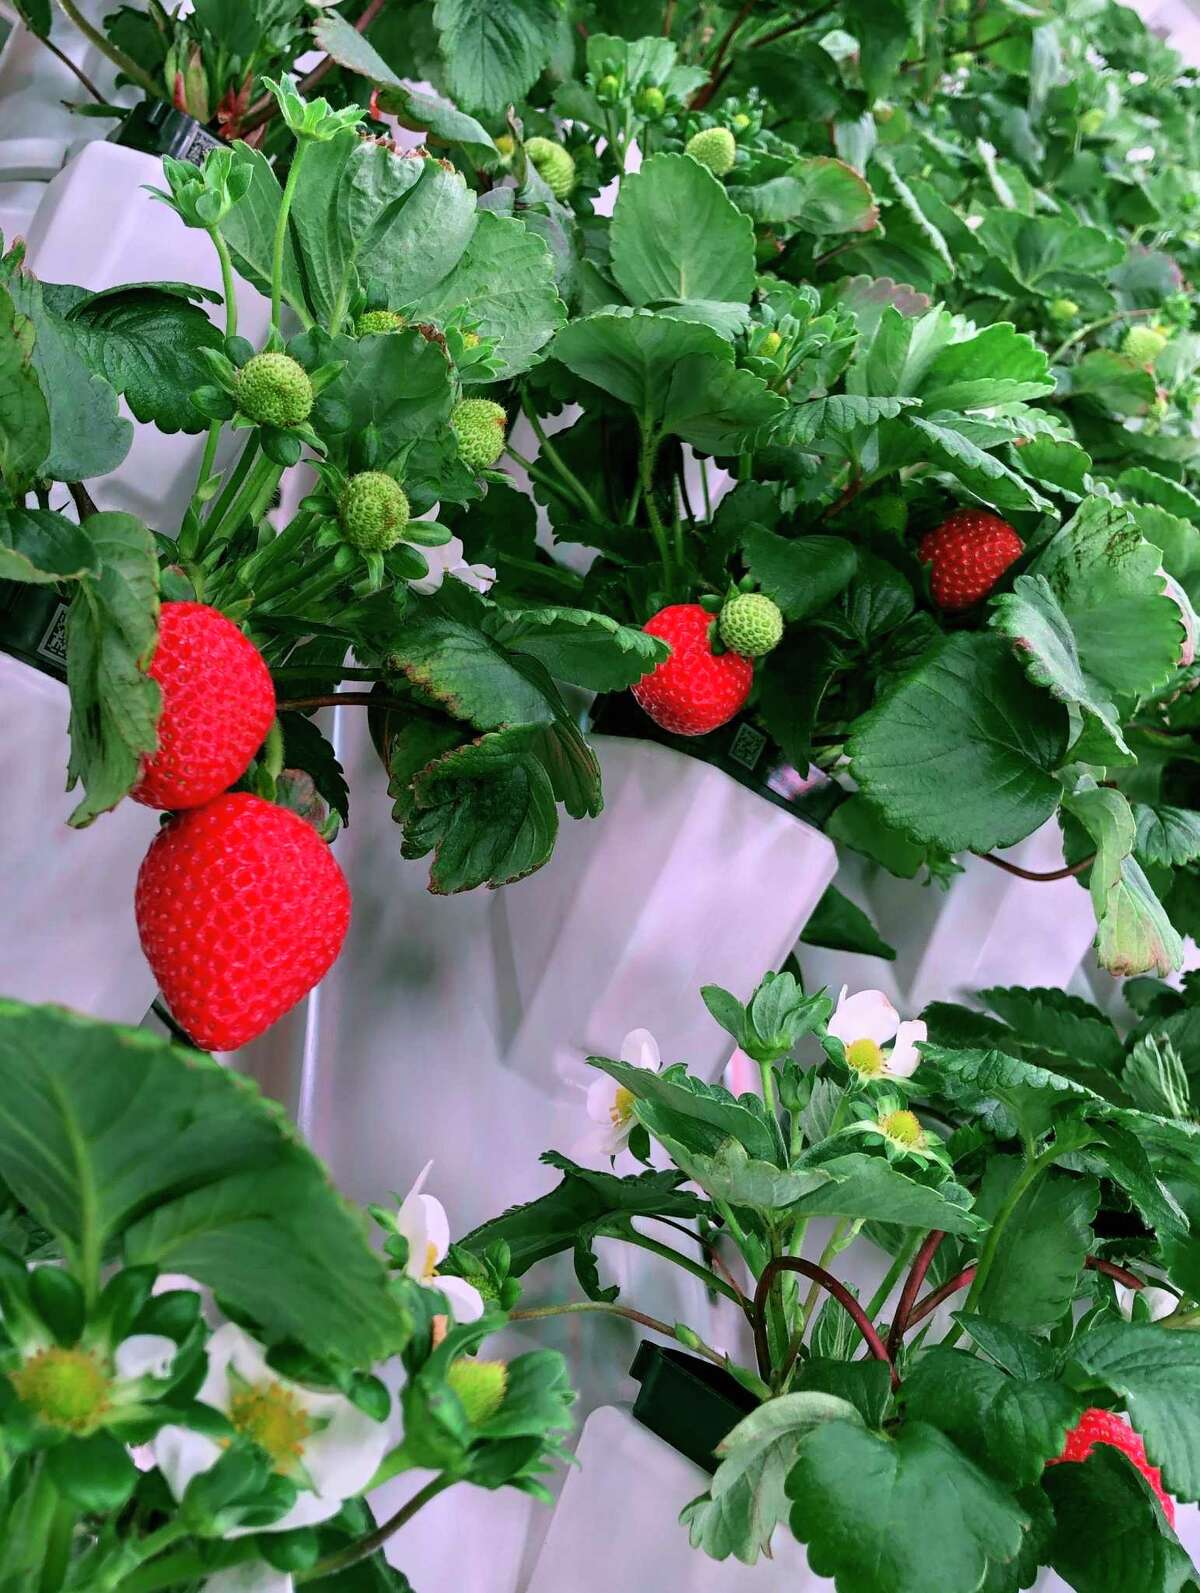 Strawberries grow in Plenty’s Wyoming test farm.